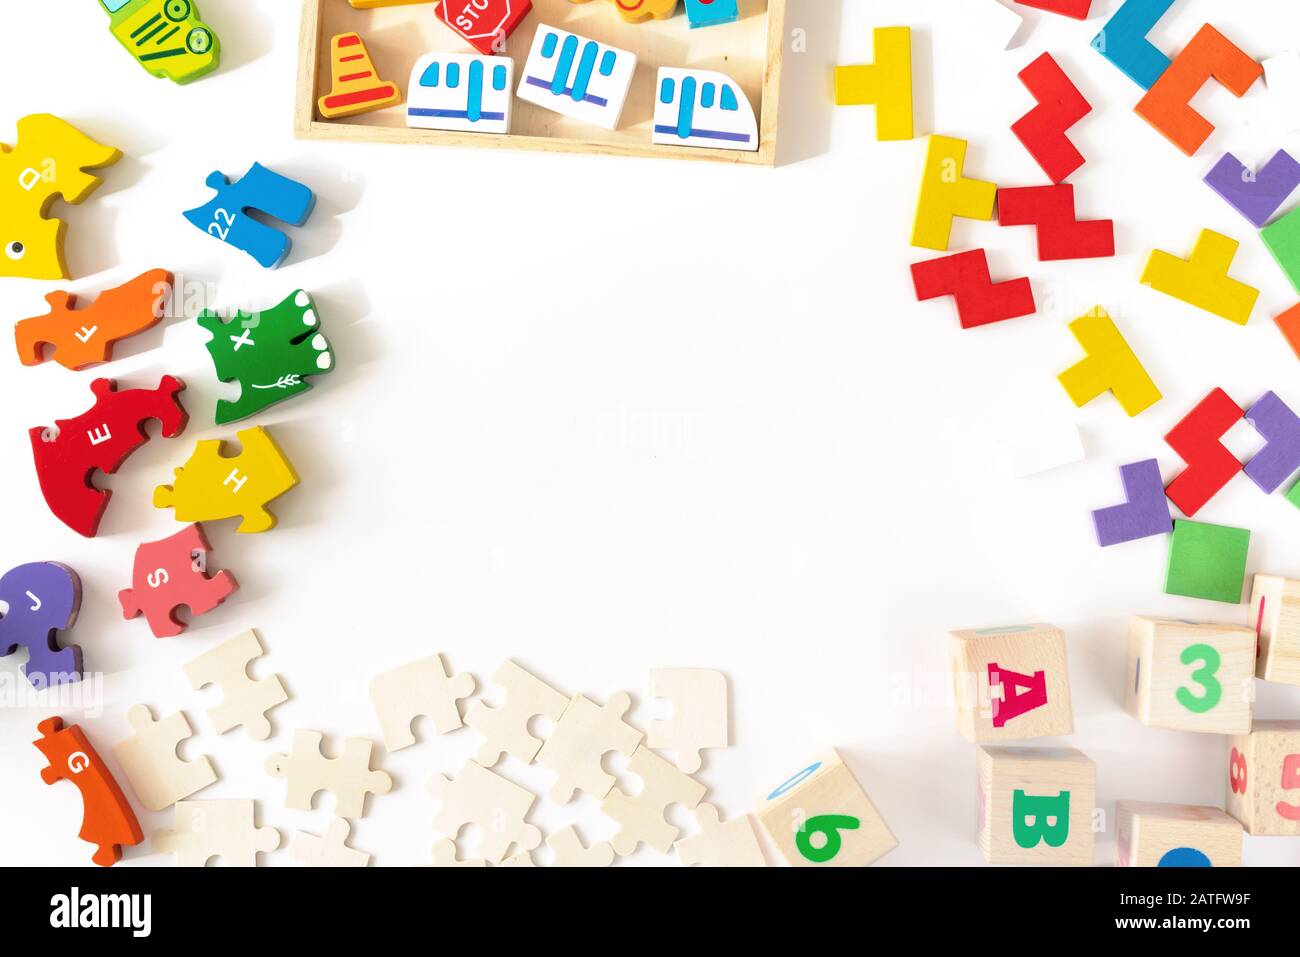 Jouets colorés pour enfants sur fond blanc. Cadre de développement de blocs colorés, voitures et avion, puzzles. Vue de dessus. Pose plate. Espace de copie pour le texte Banque D'Images